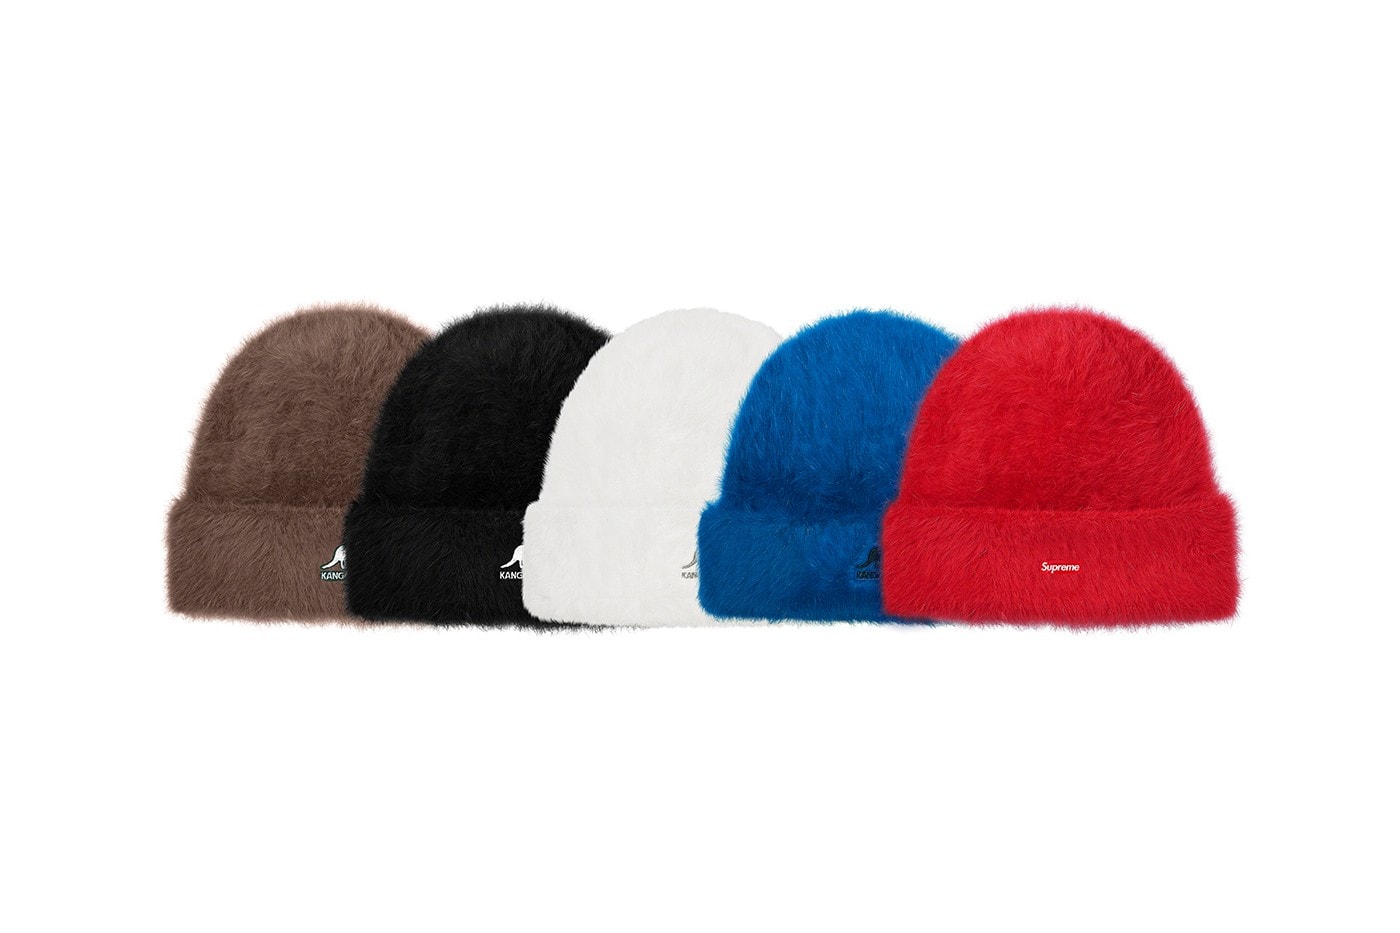 슈프림 2021 가을, 겨울 컬렉션 - 모자, 캡, 비니